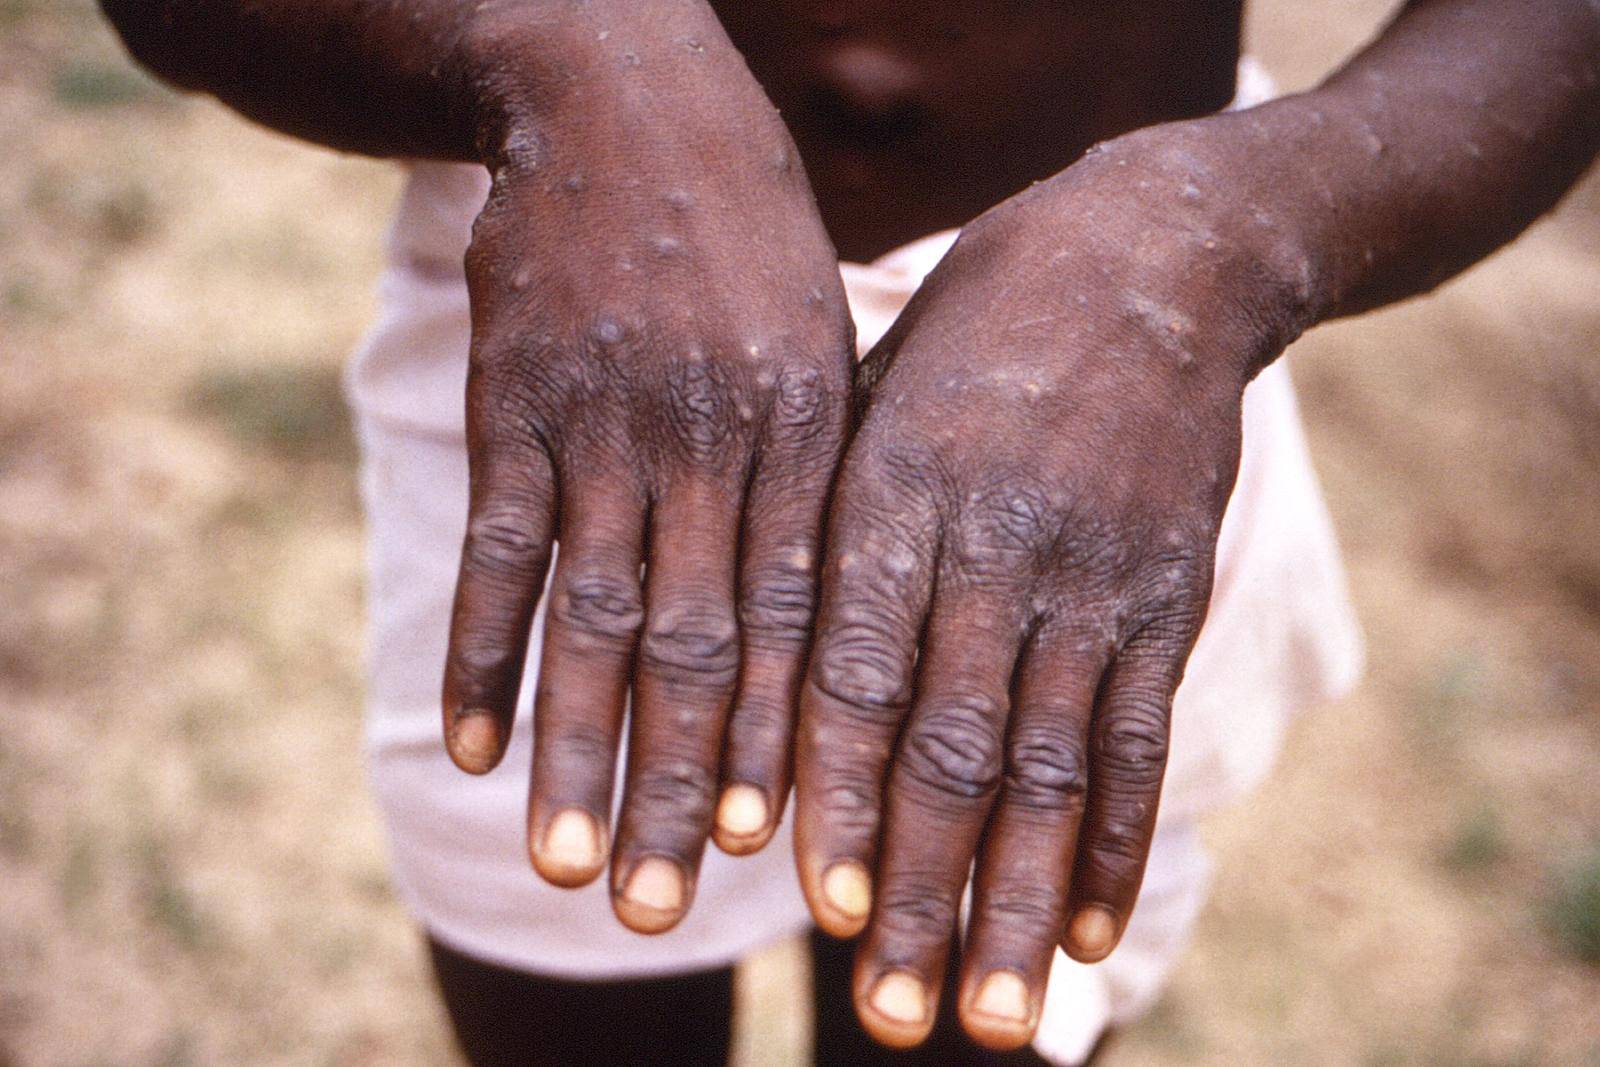 A CDC image shows a rash on a monkeypox patient